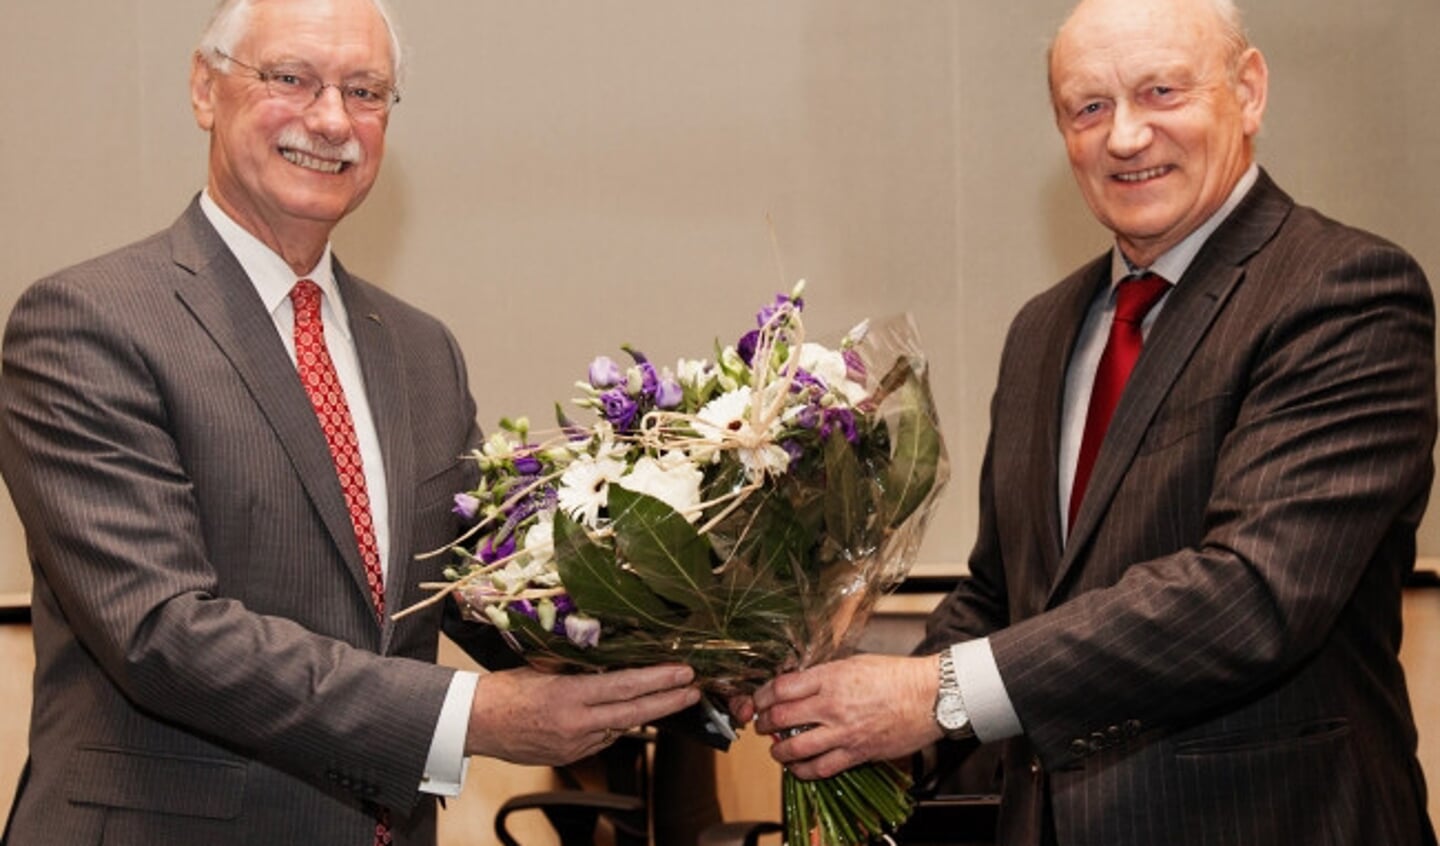  Plaatsvervangend raadsvoorzitter Jan Spijkerboer feliciteert burgemeester Van der Hoeve met de voordracht.